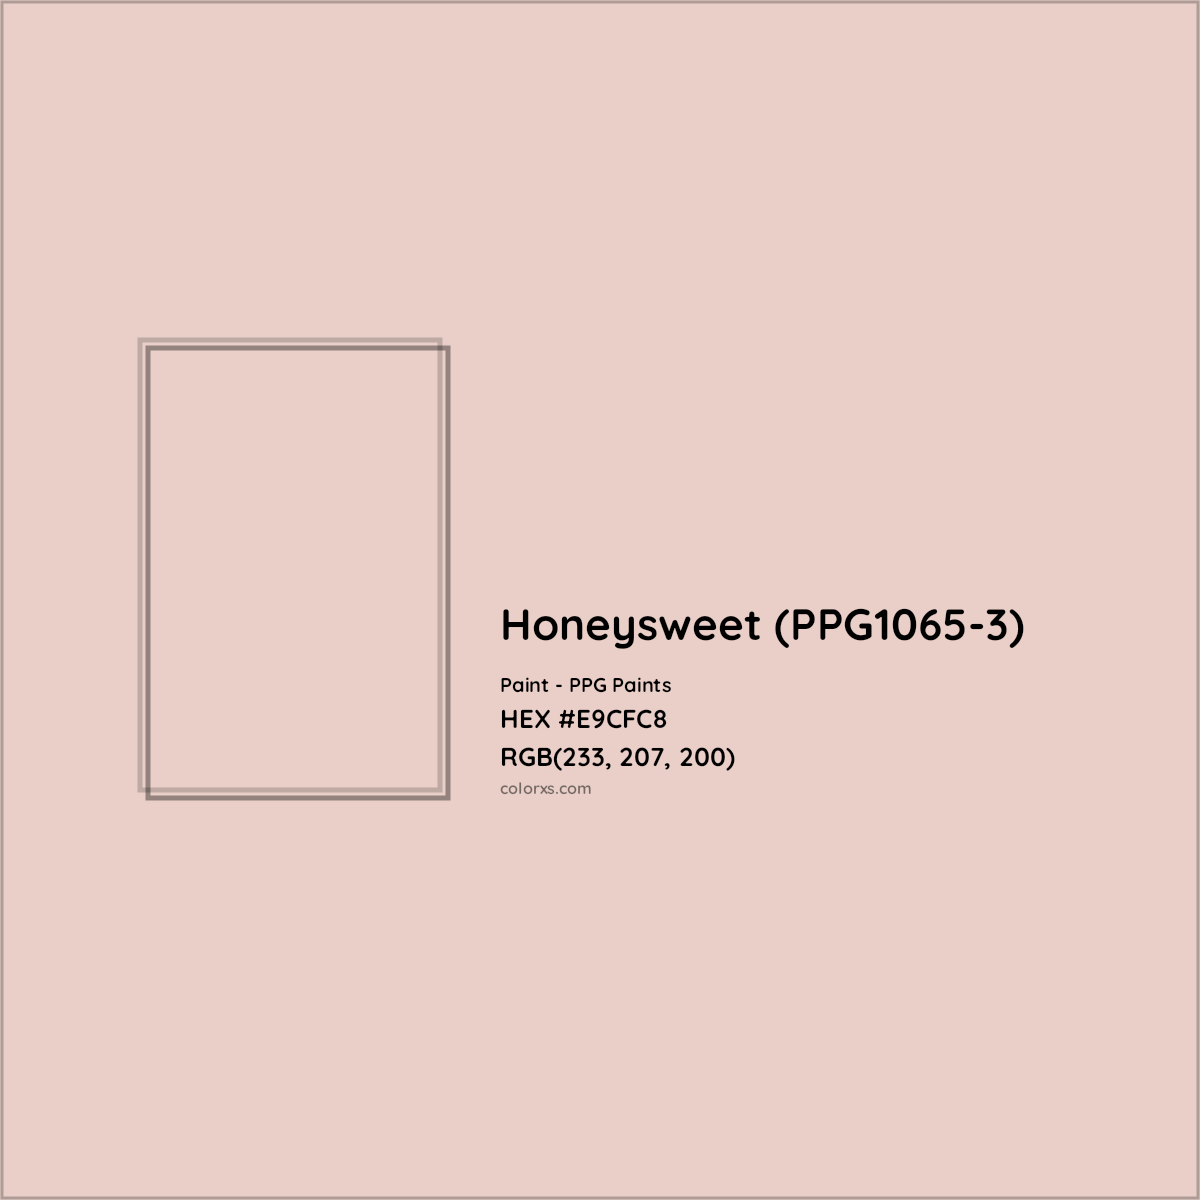 HEX #E9CFC8 Honeysweet (PPG1065-3) Paint PPG Paints - Color Code